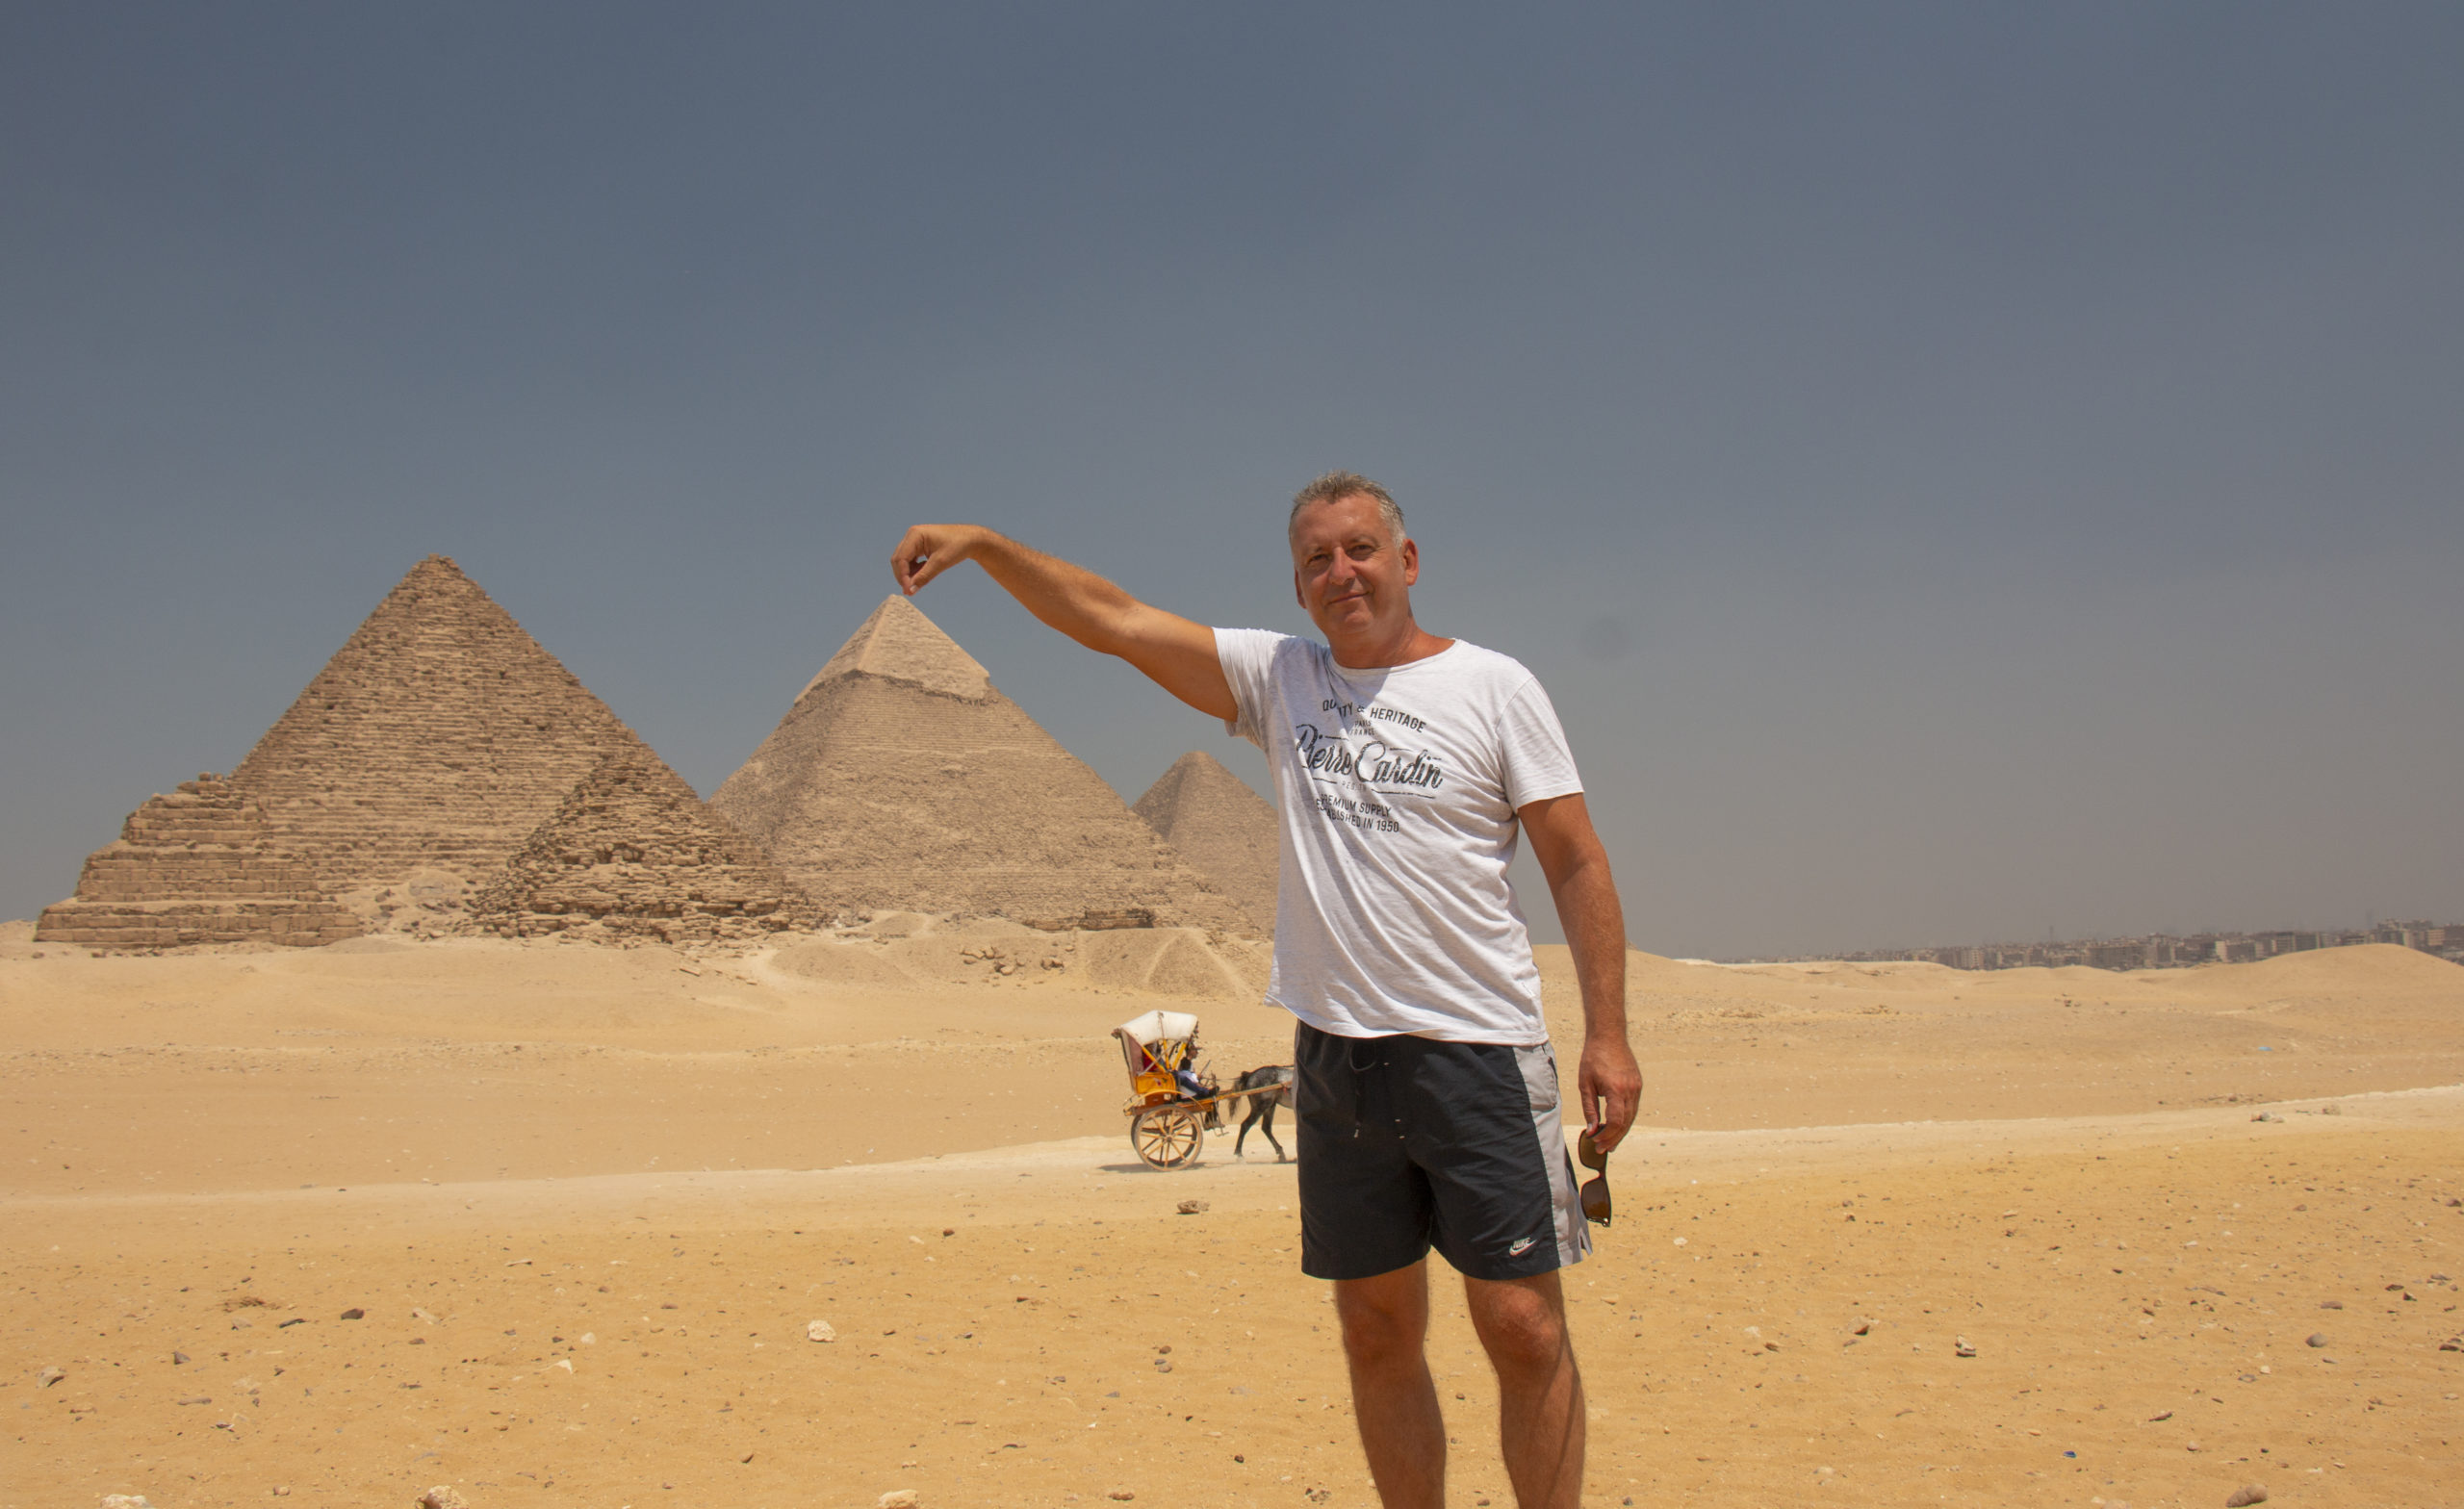 Dovolenka v Egypte bez cestovky je možná